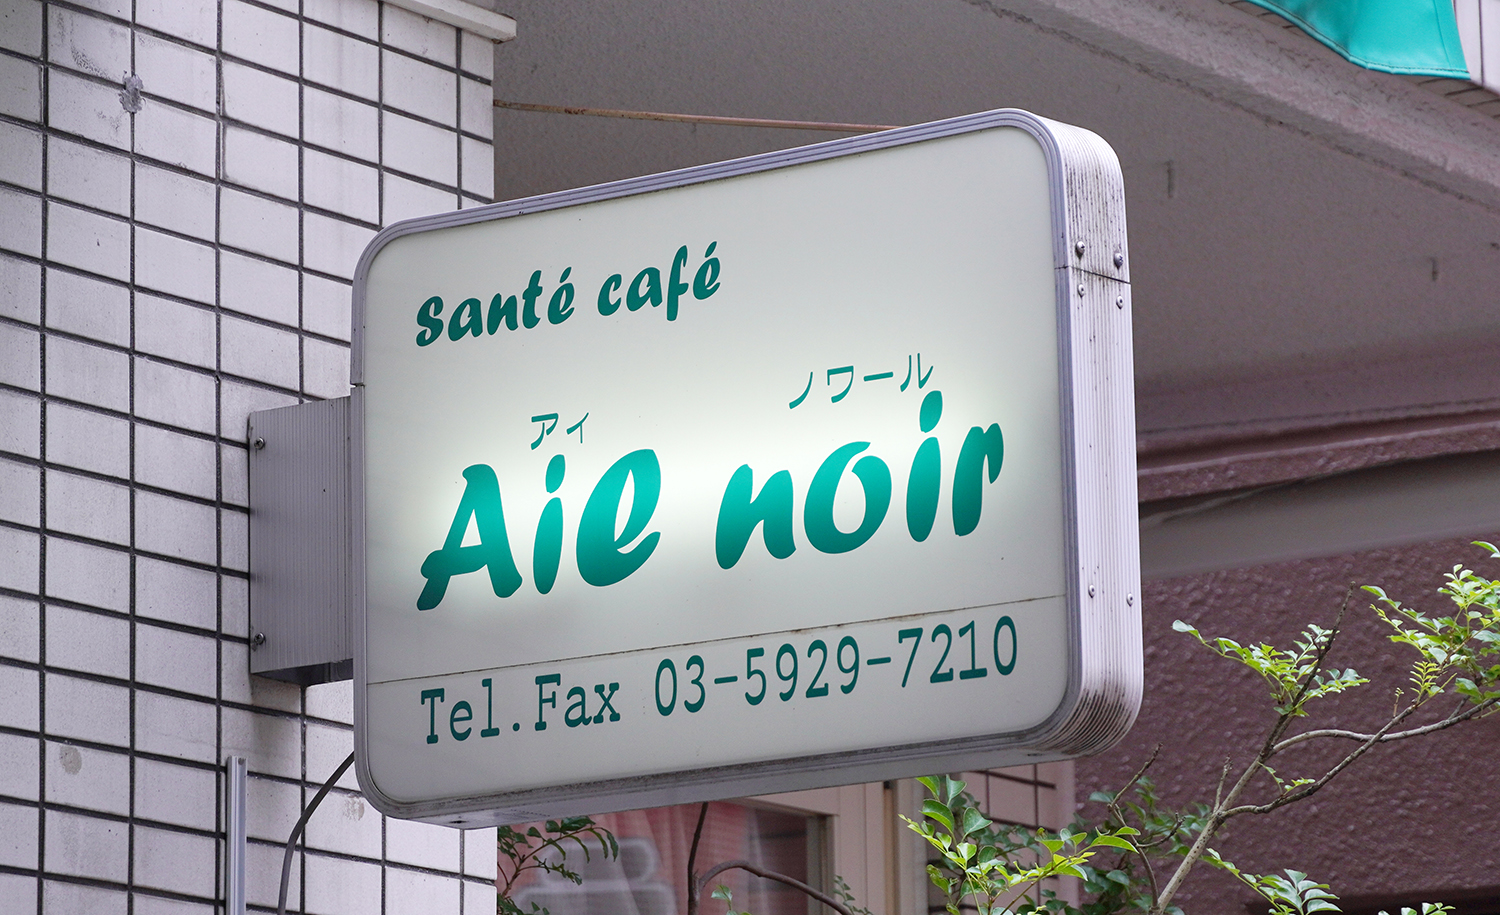 「santé café」はフランス語で「健康カフェ」。明るく入りやすい店構え。